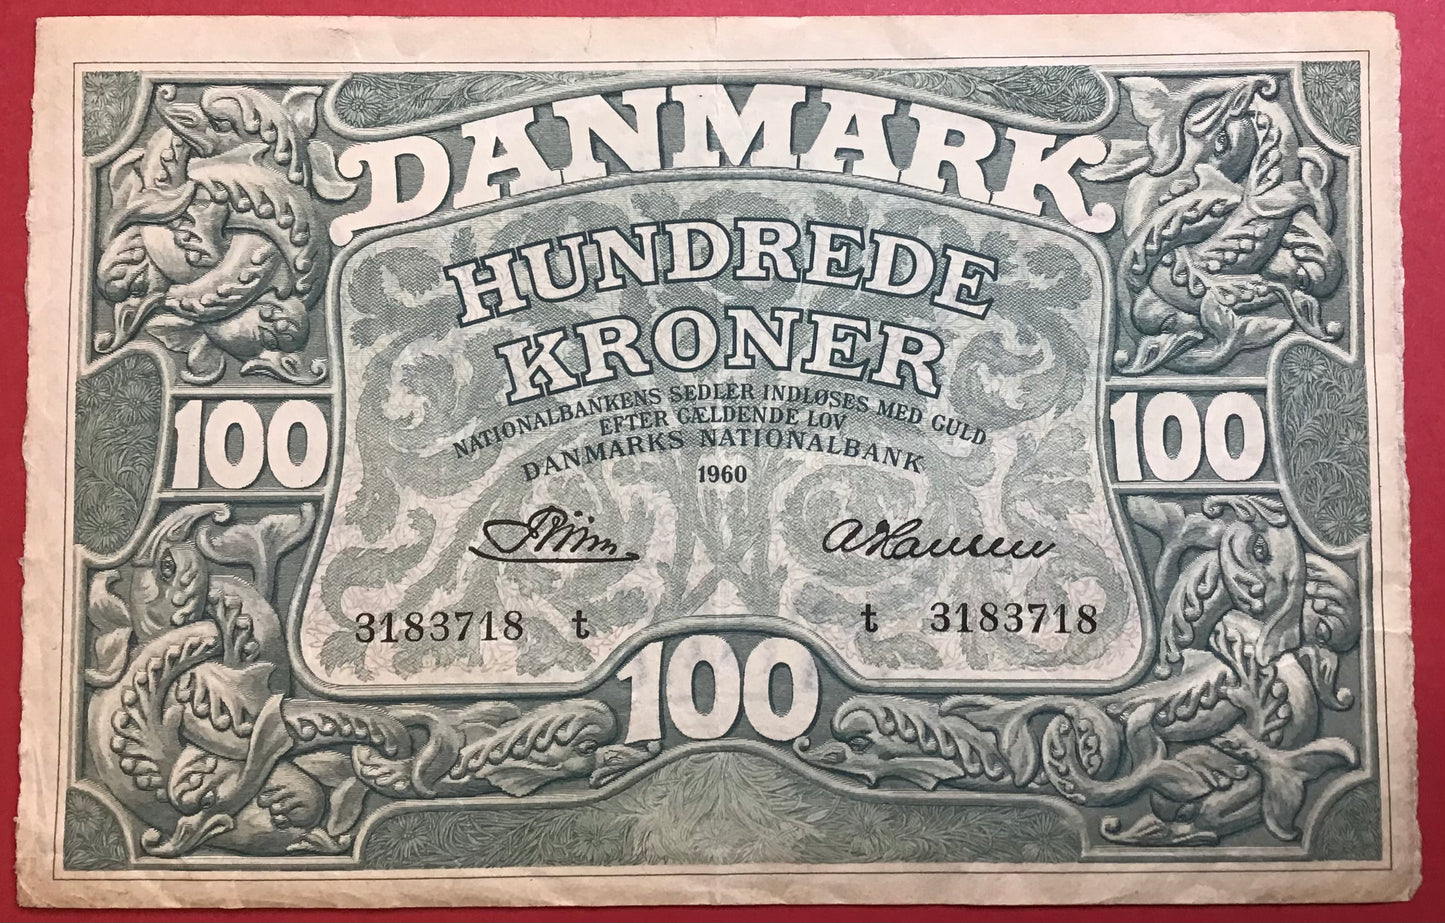 Danmark - 100 Kroner 1960 (T 3183718) Sieg#126 Kvalitet 1+